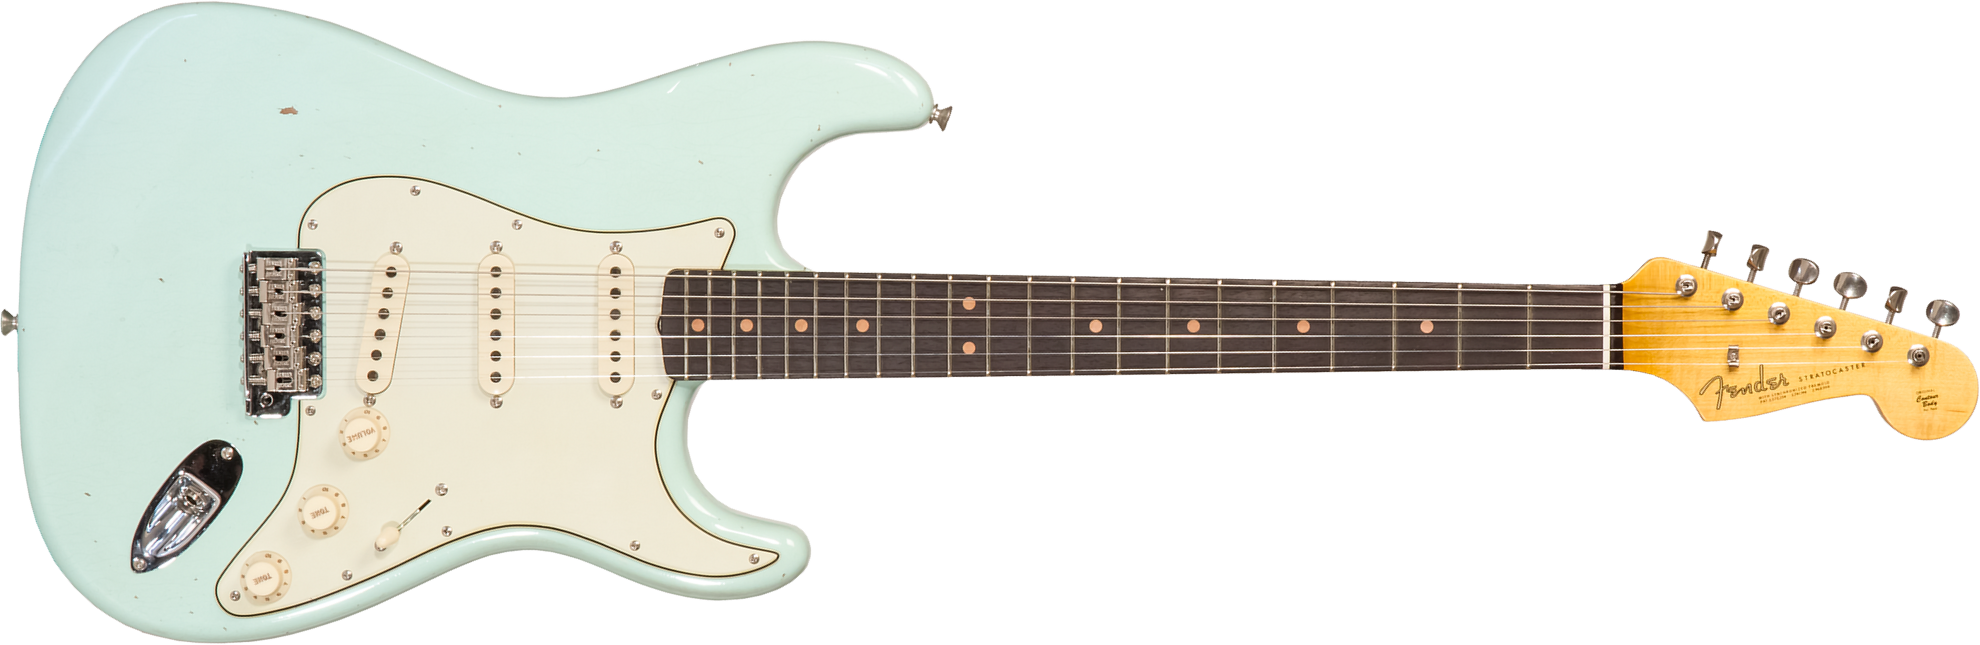 Fender Custom Shop Strat 1964 3s Trem Rw #cz570381 - Journeyman Relic Aged Surf Green - Elektrische gitaar in Str-vorm - Main picture